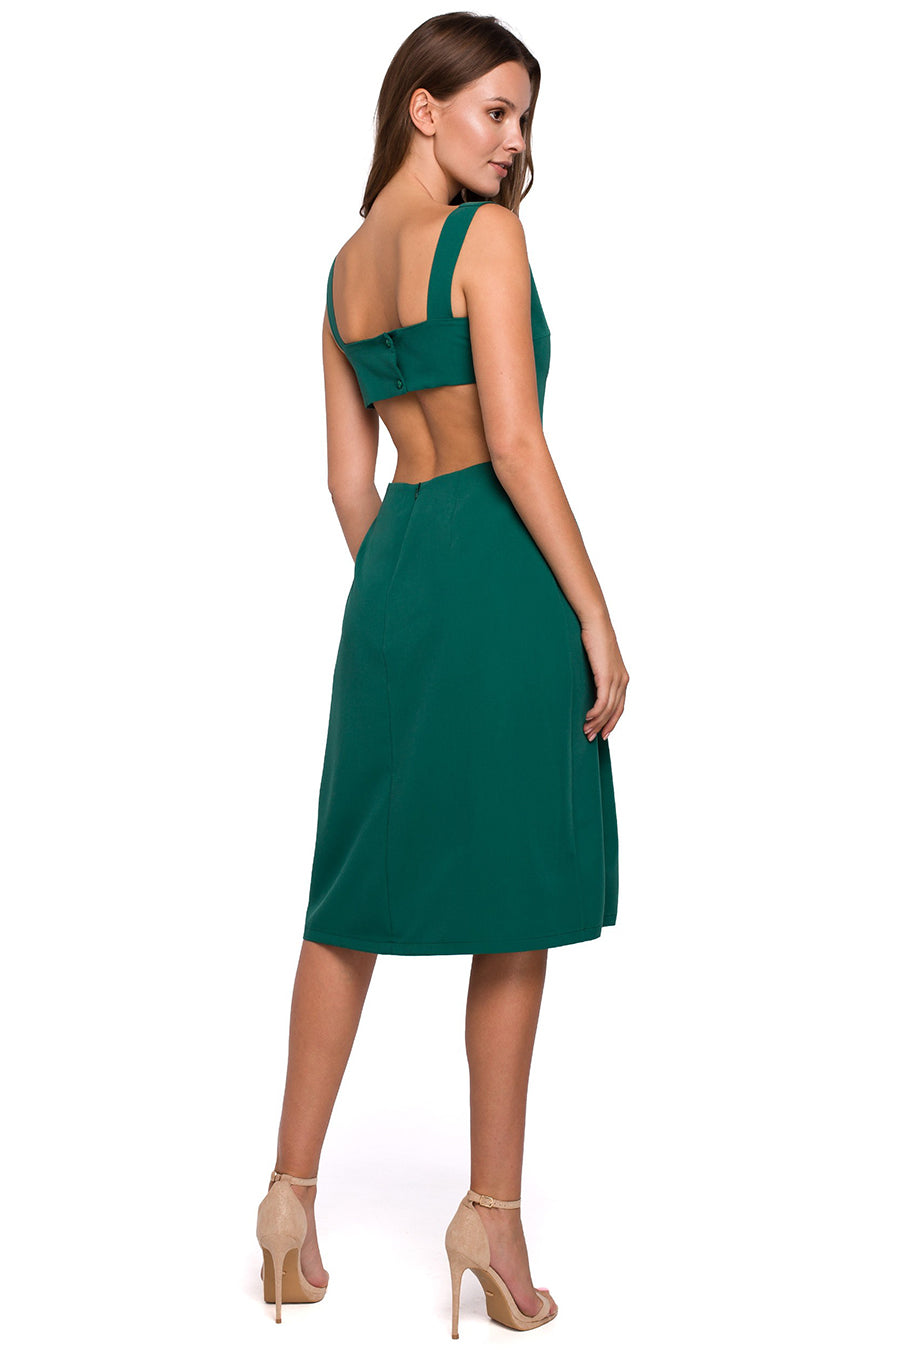 Γυναικείο φόρεμα Melinda, Πράσινο 2